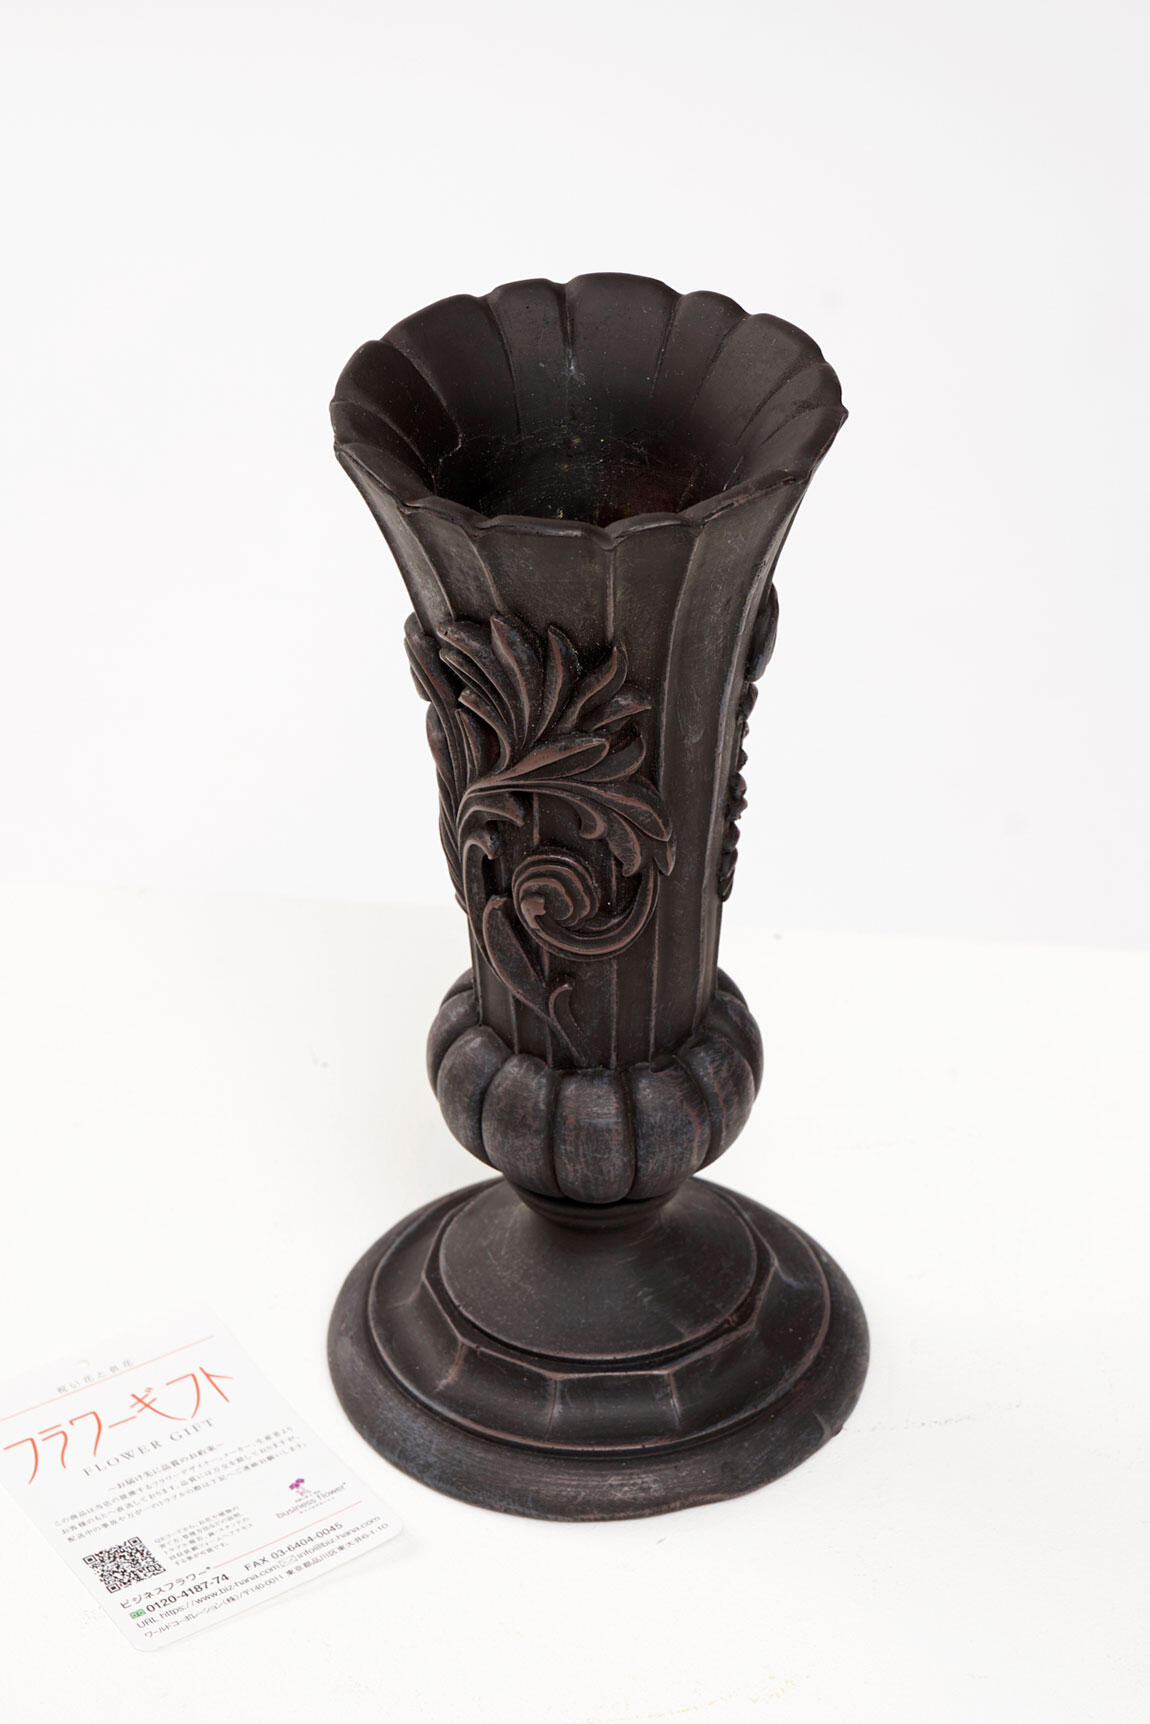 <p>花瓶はアンティーク調のシンプルでおしゃれなデザインが特徴です。樹脂製のため比較的丈夫でフラワーギフトとして贈りやすい花瓶です。</p>